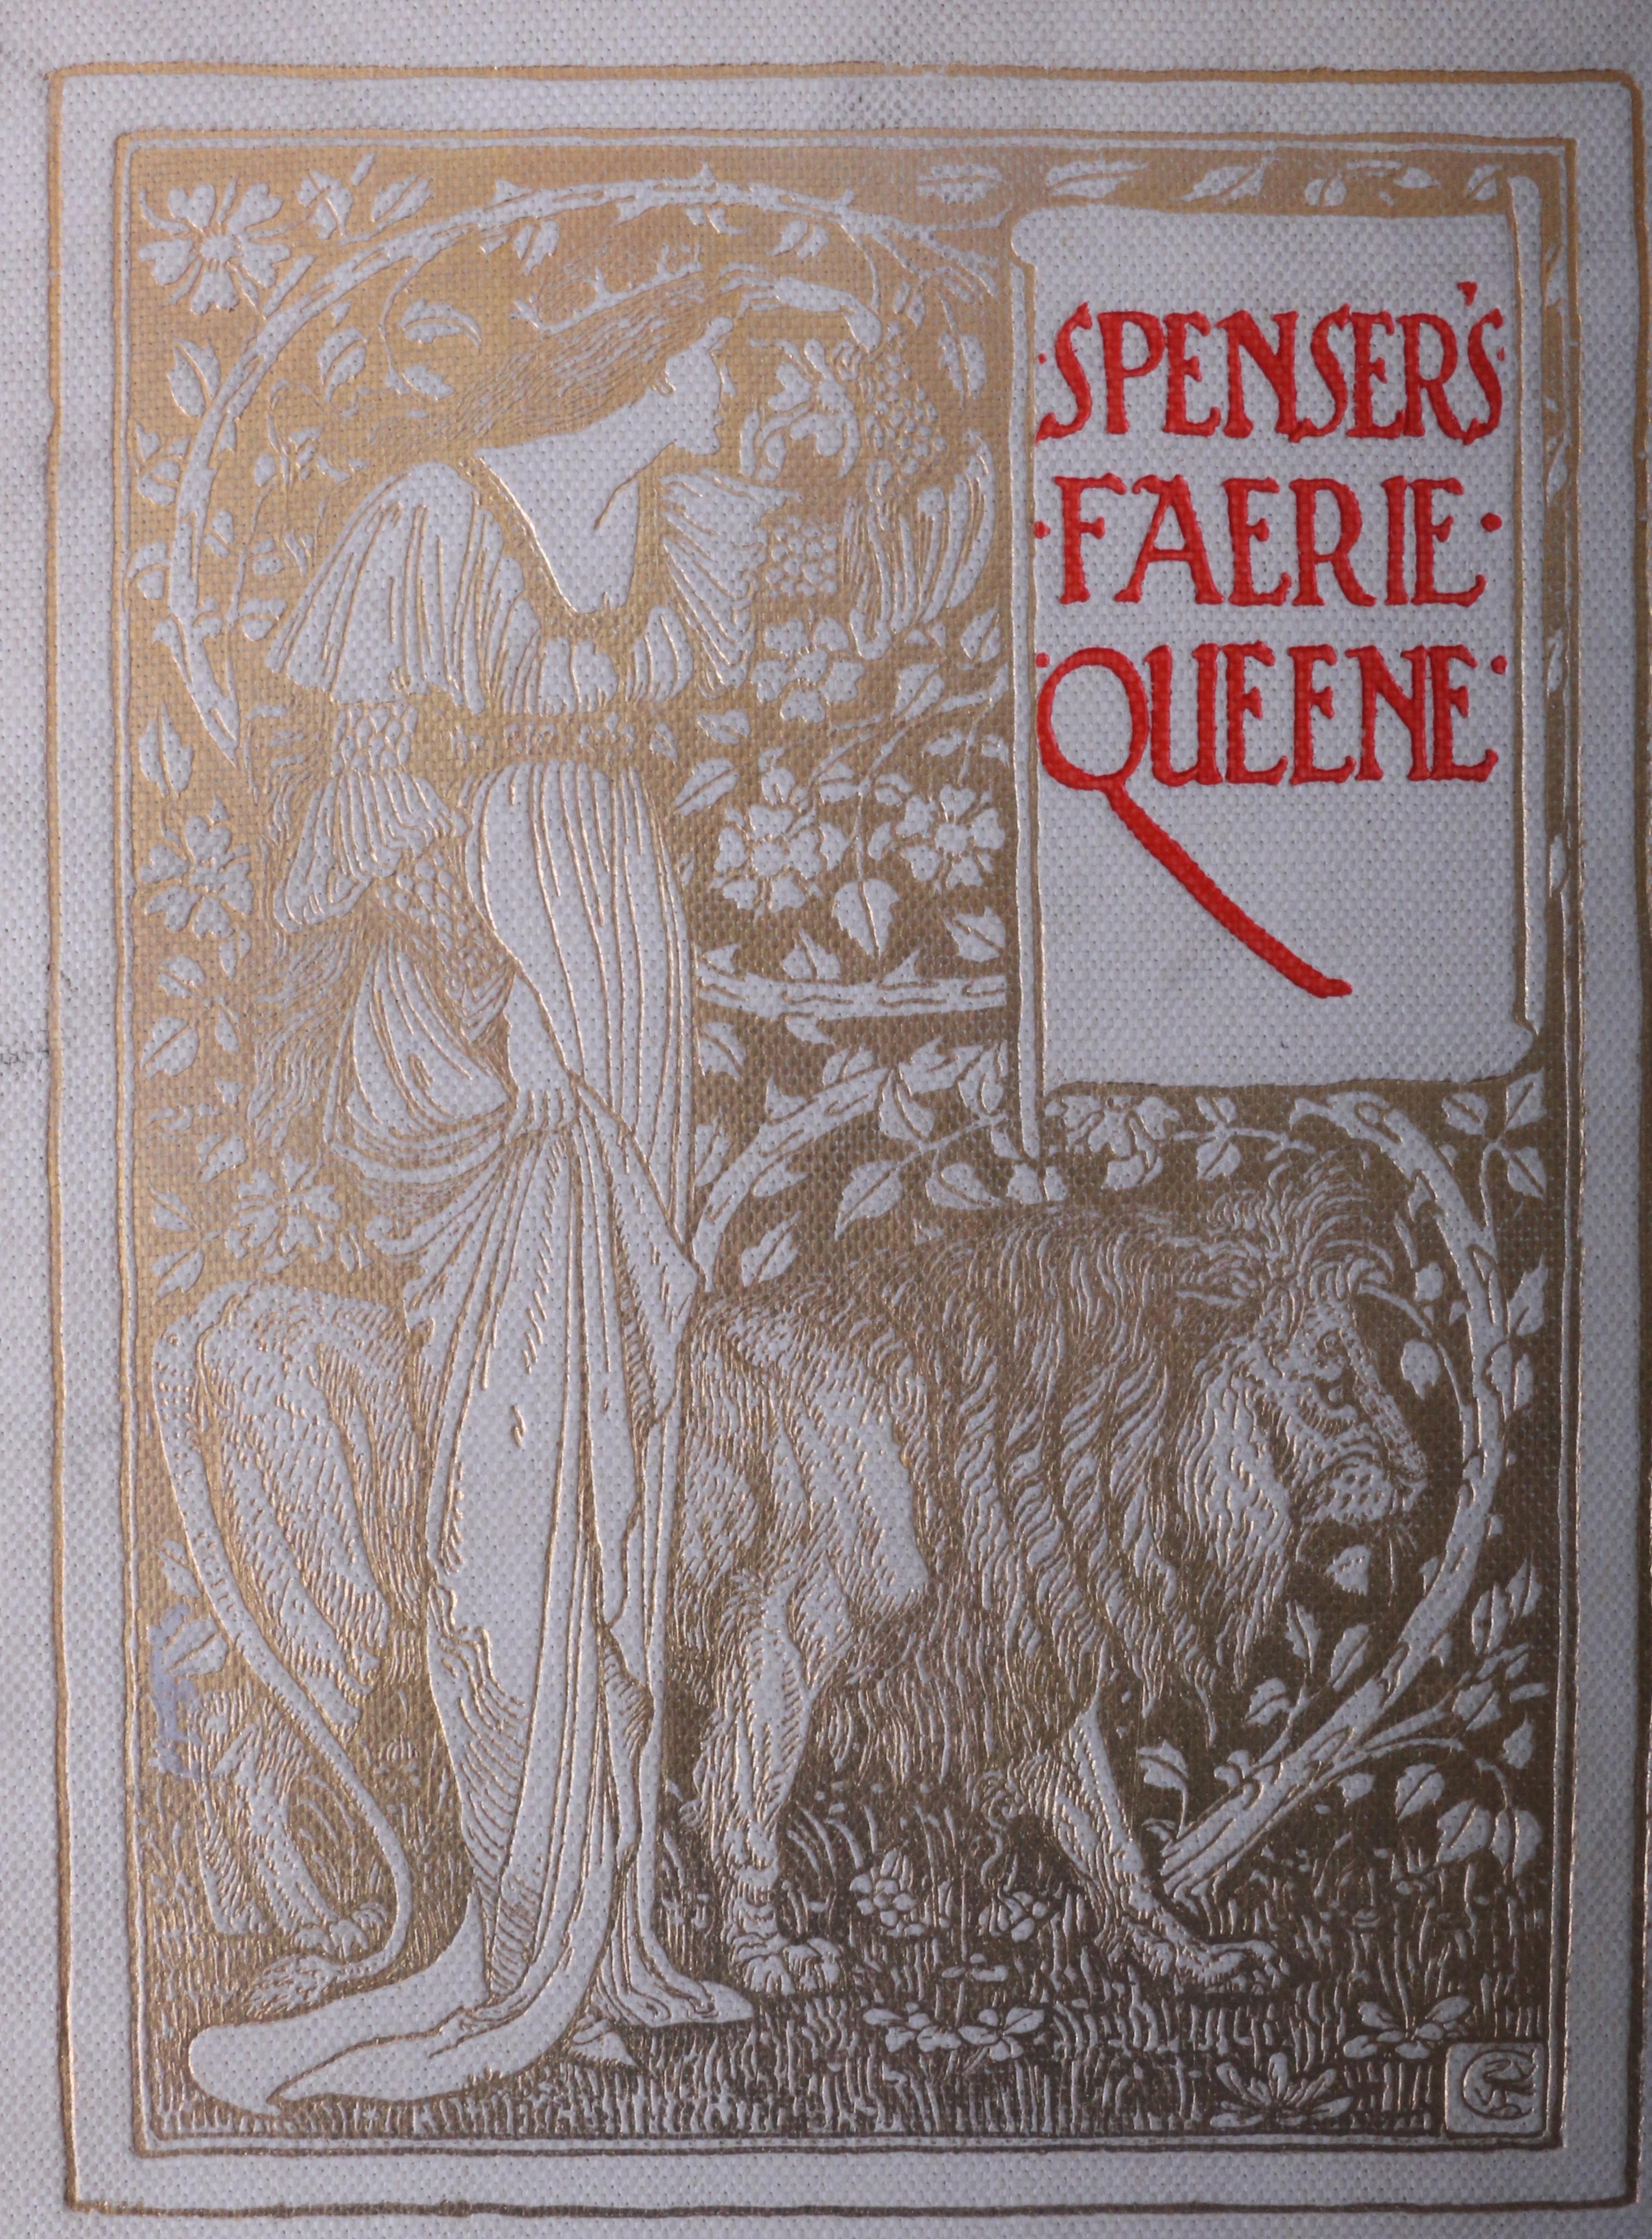 Edmund Spenser - Spenser's Faerie Queene - George Allen, 1897, First Thus.